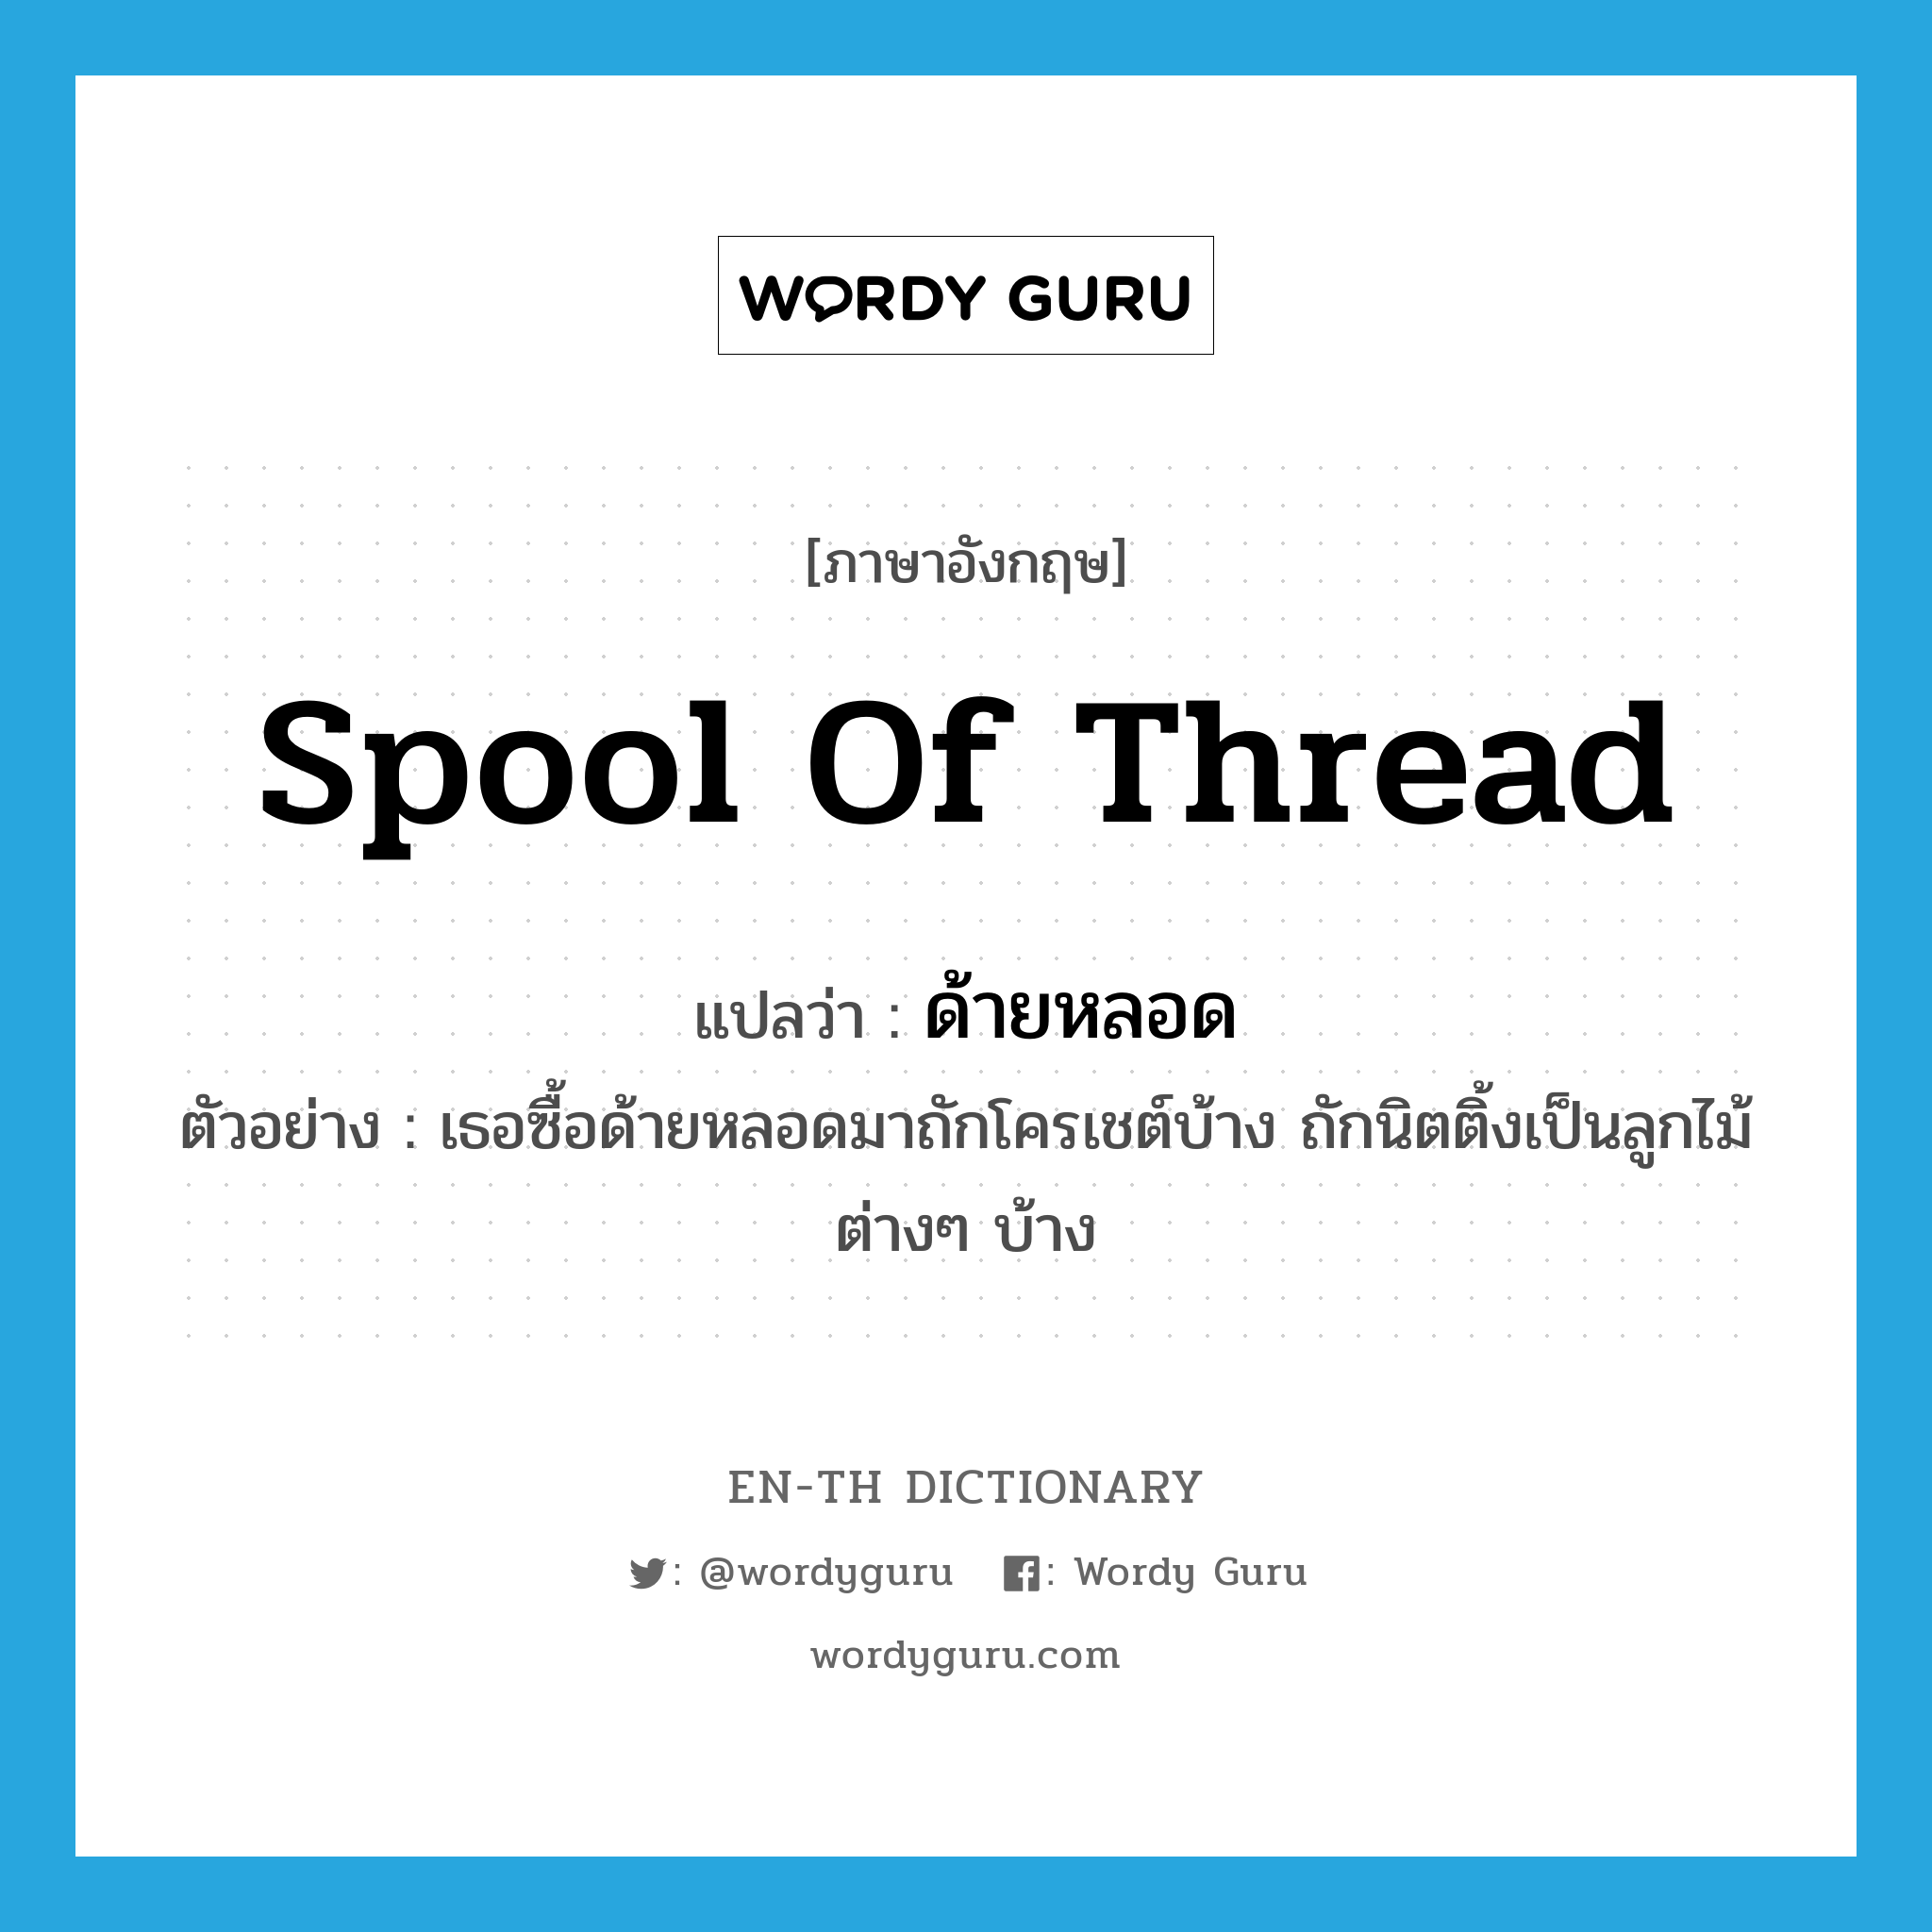 spool of thread แปลว่า?, คำศัพท์ภาษาอังกฤษ spool of thread แปลว่า ด้ายหลอด ประเภท N ตัวอย่าง เธอซื้อด้ายหลอดมาถักโครเชต์บ้าง ถักนิตติ้งเป็นลูกไม้ต่างๆ บ้าง หมวด N